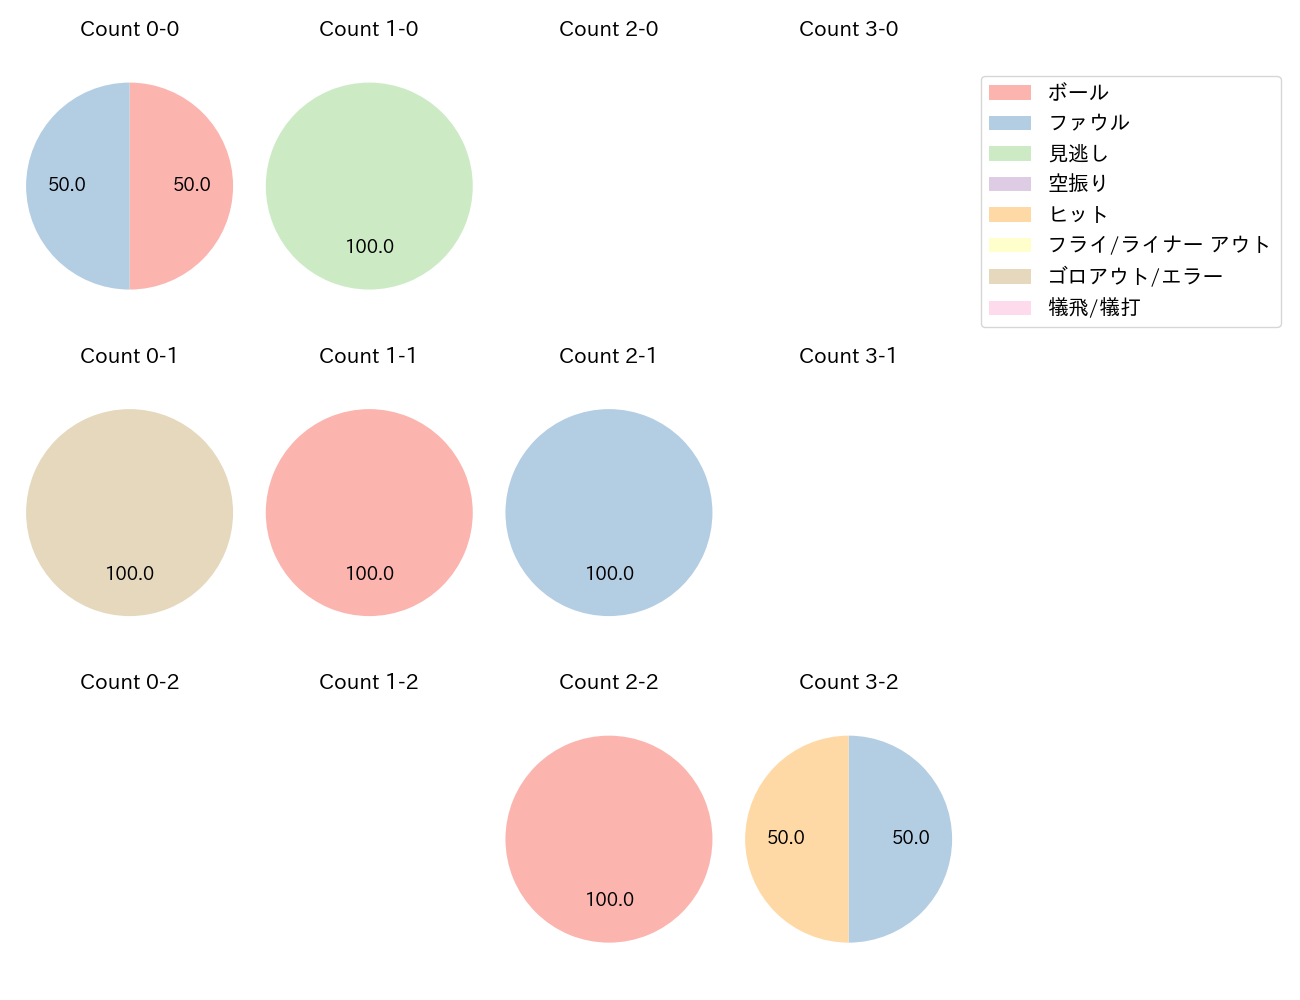 石川 柊太の球数分布(2021年6月)